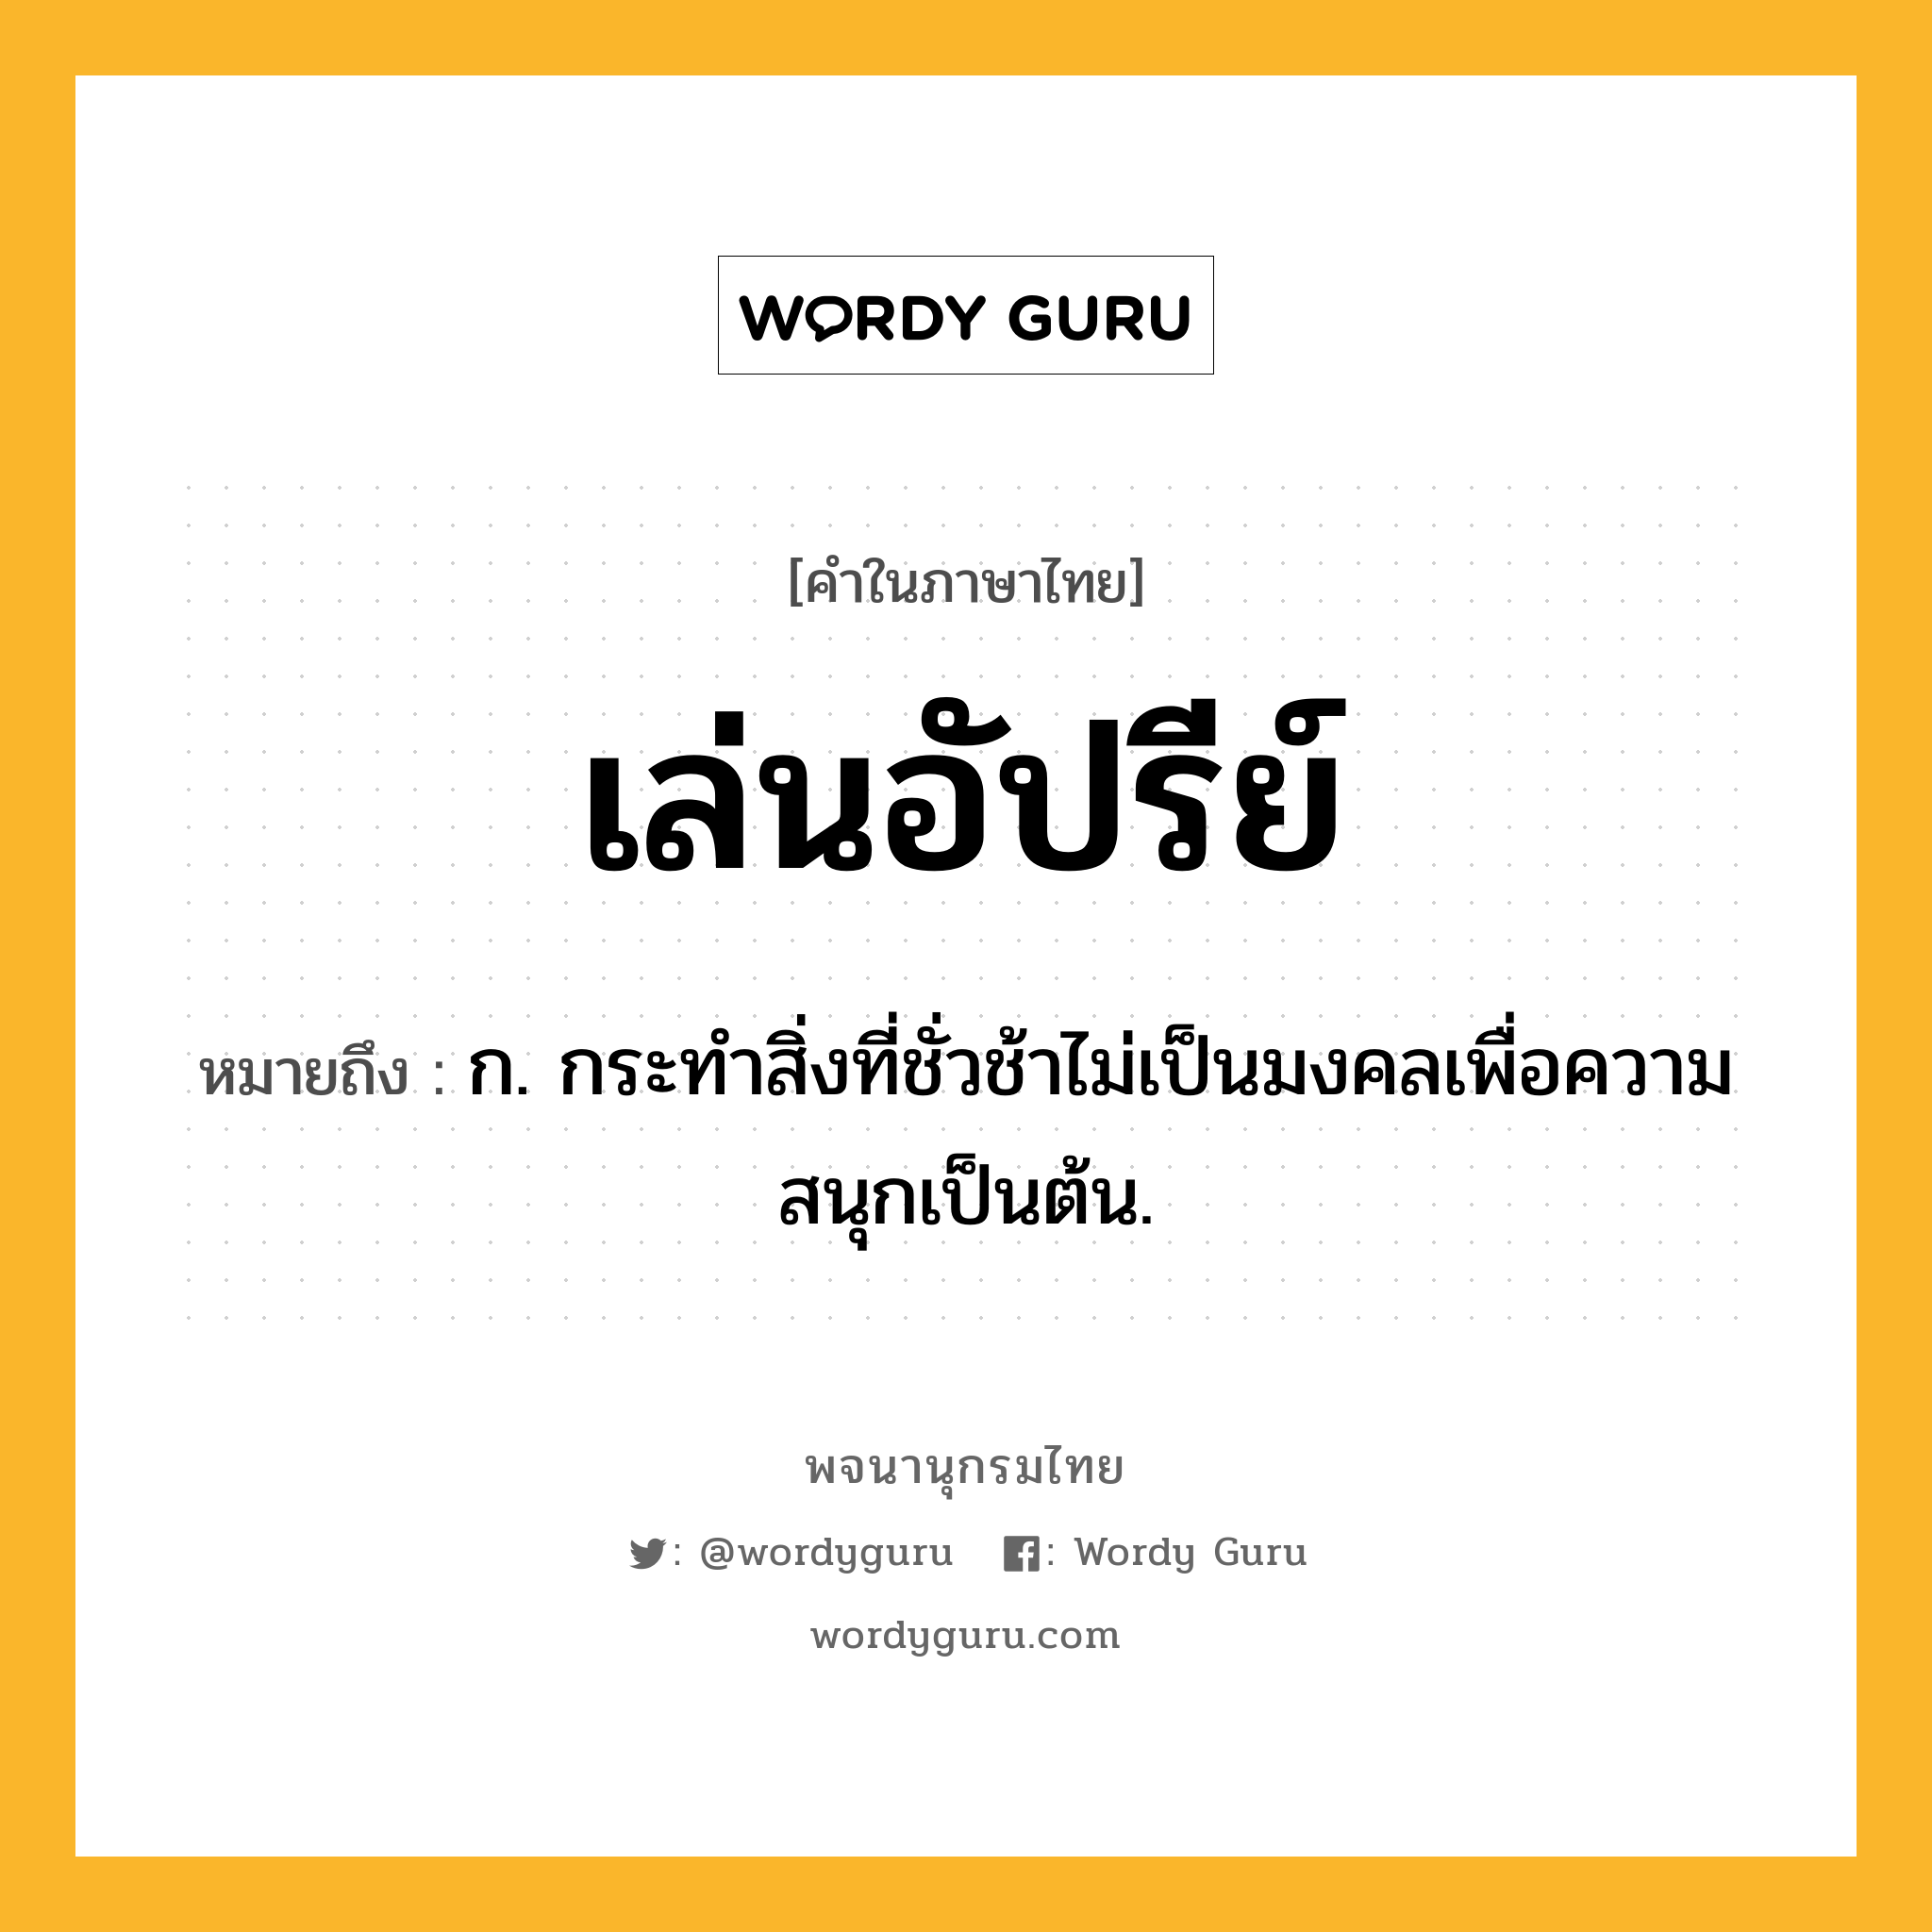 เล่นอัปรีย์ ความหมาย หมายถึงอะไร?, คำในภาษาไทย เล่นอัปรีย์ หมายถึง ก. กระทำสิ่งที่ชั่วช้าไม่เป็นมงคลเพื่อความสนุกเป็นต้น.